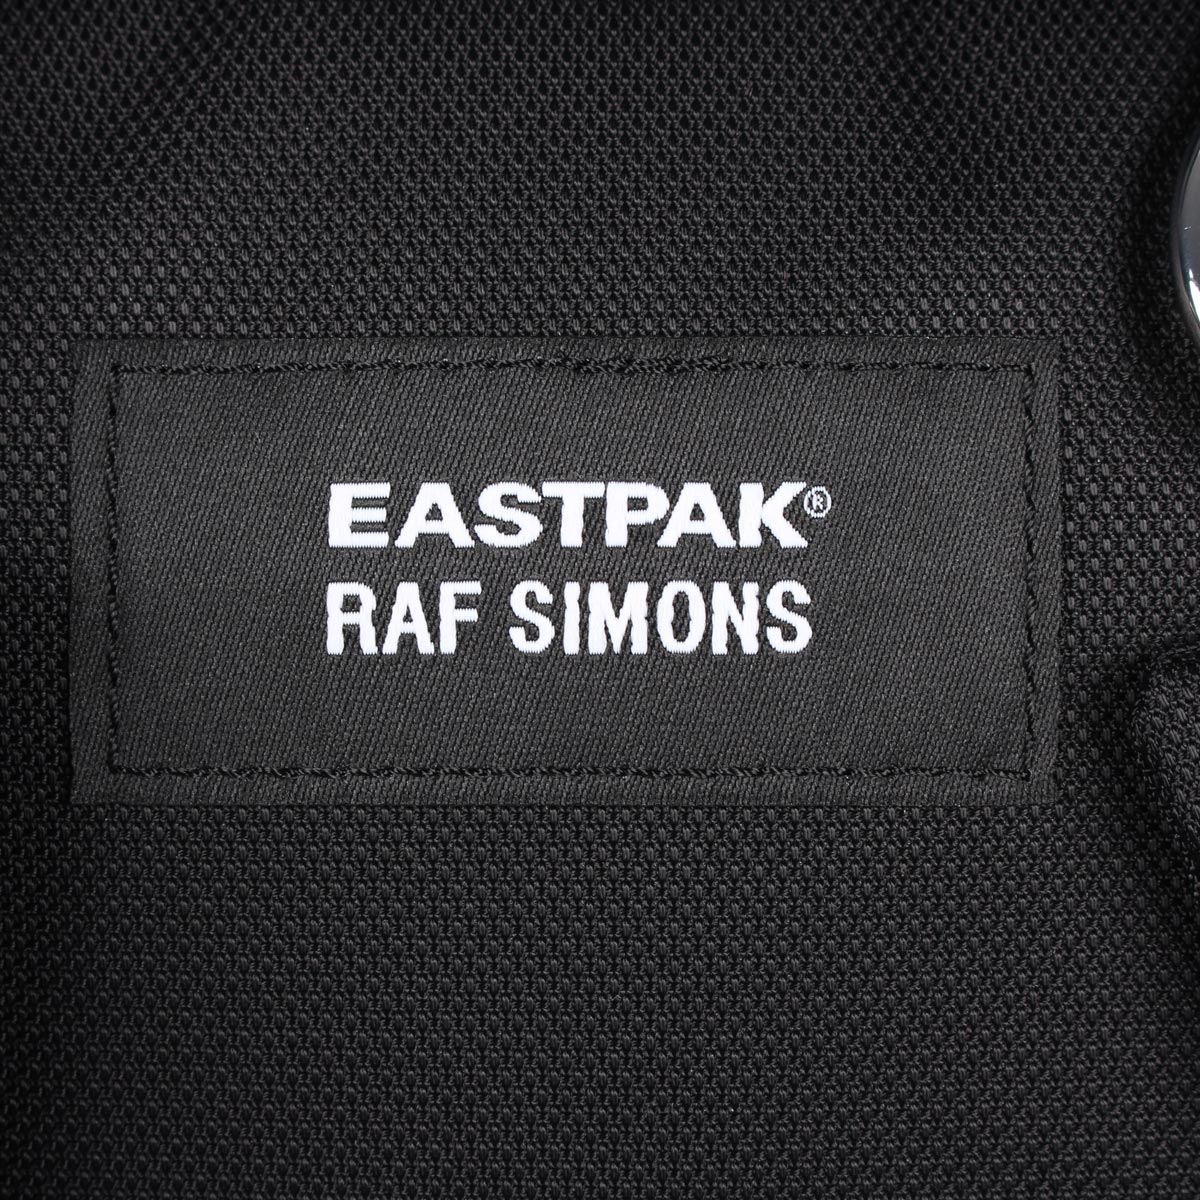 【最大1000円OFFクーポン】 RAF SIMONS EASTPAK PADDED DOUBLR ラフシモンズ イーストパック リュック バッグ  バックパック メンズ レディース コラボ 30L ブラック 黒 EK36FB89 | ALLSPORTS